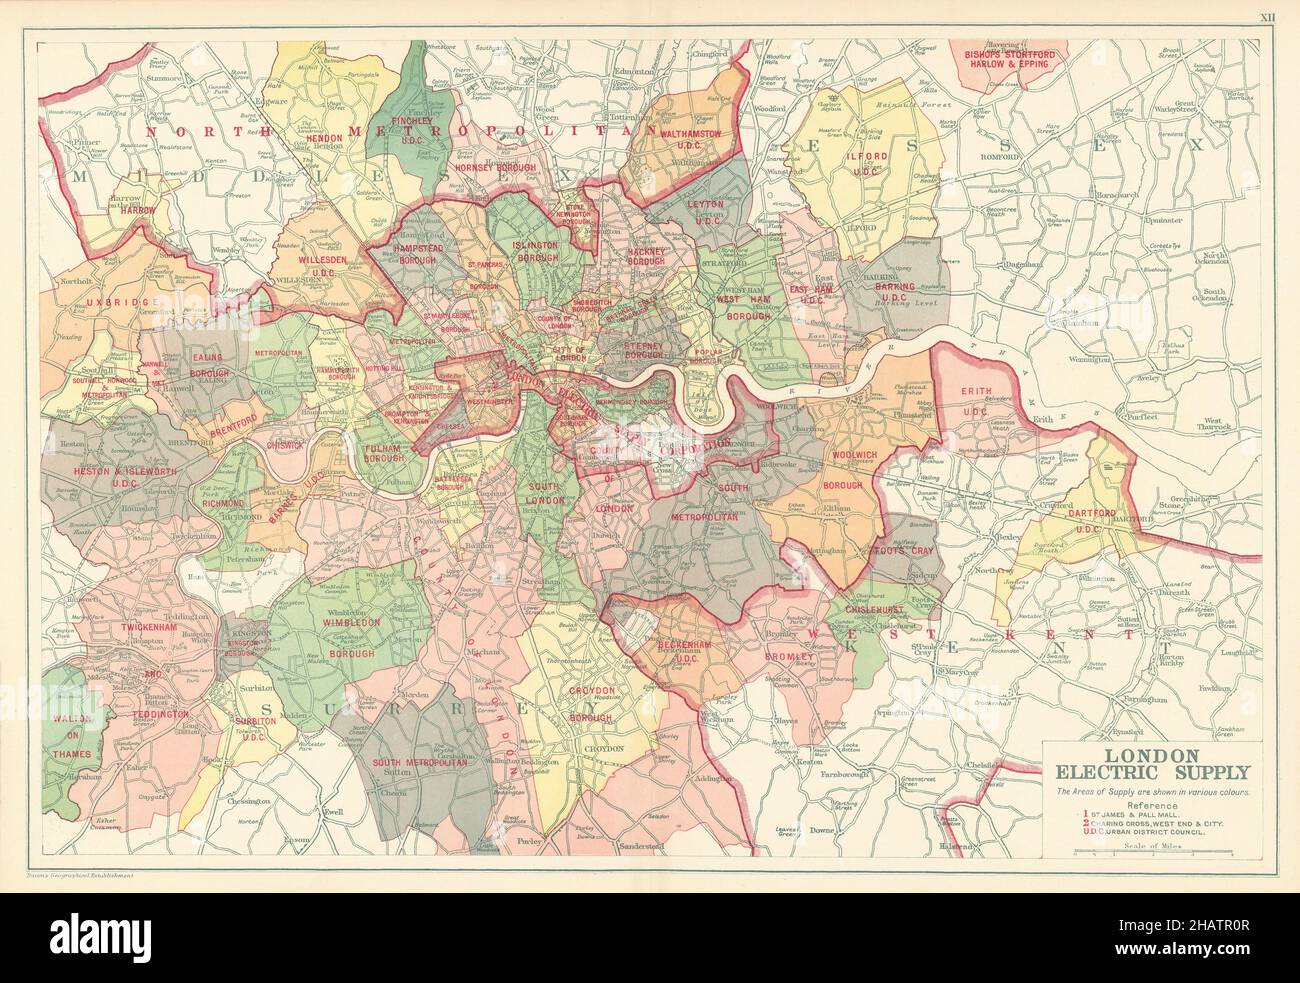 LONDONER ELEKTRIZITÄTSVERSORGUNGSGEBIETE. Unternehmen. Metropolregion. BACON 1923 alte Karte Stockfoto